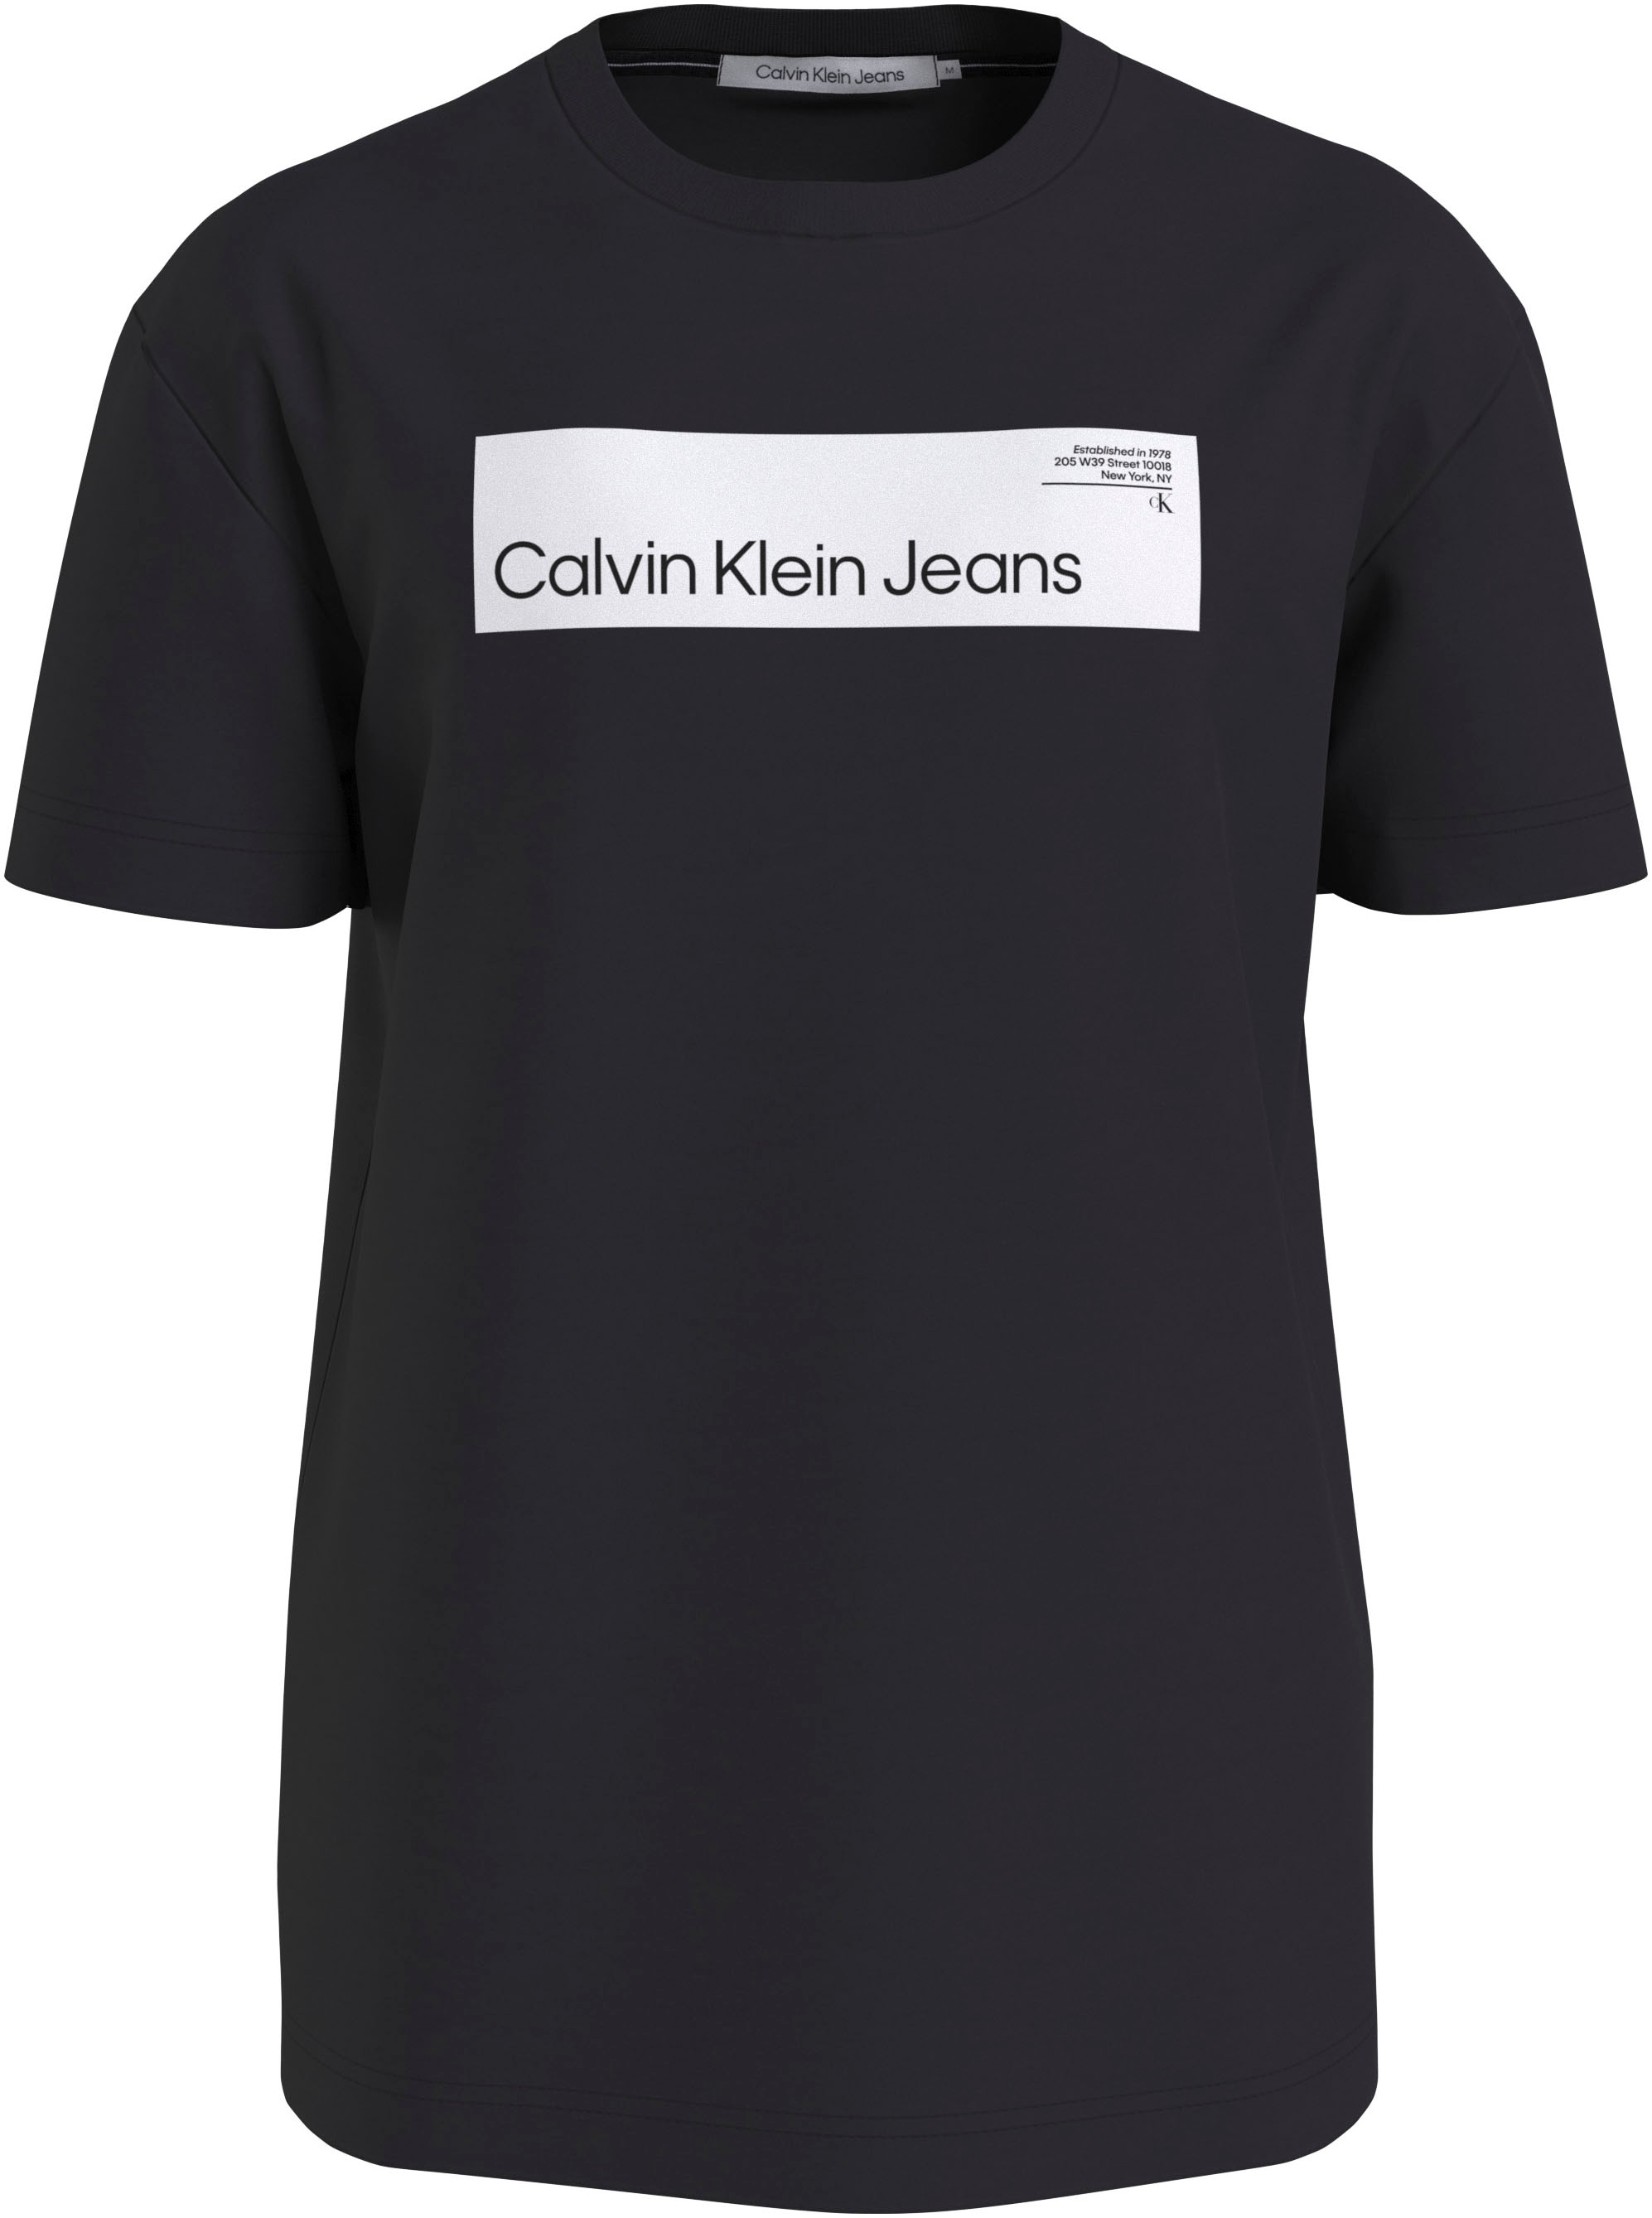 Calvin Klein Jeans T-Shirt online REAL BOX LOGO bei »HYPER TEE« bestellen OTTO